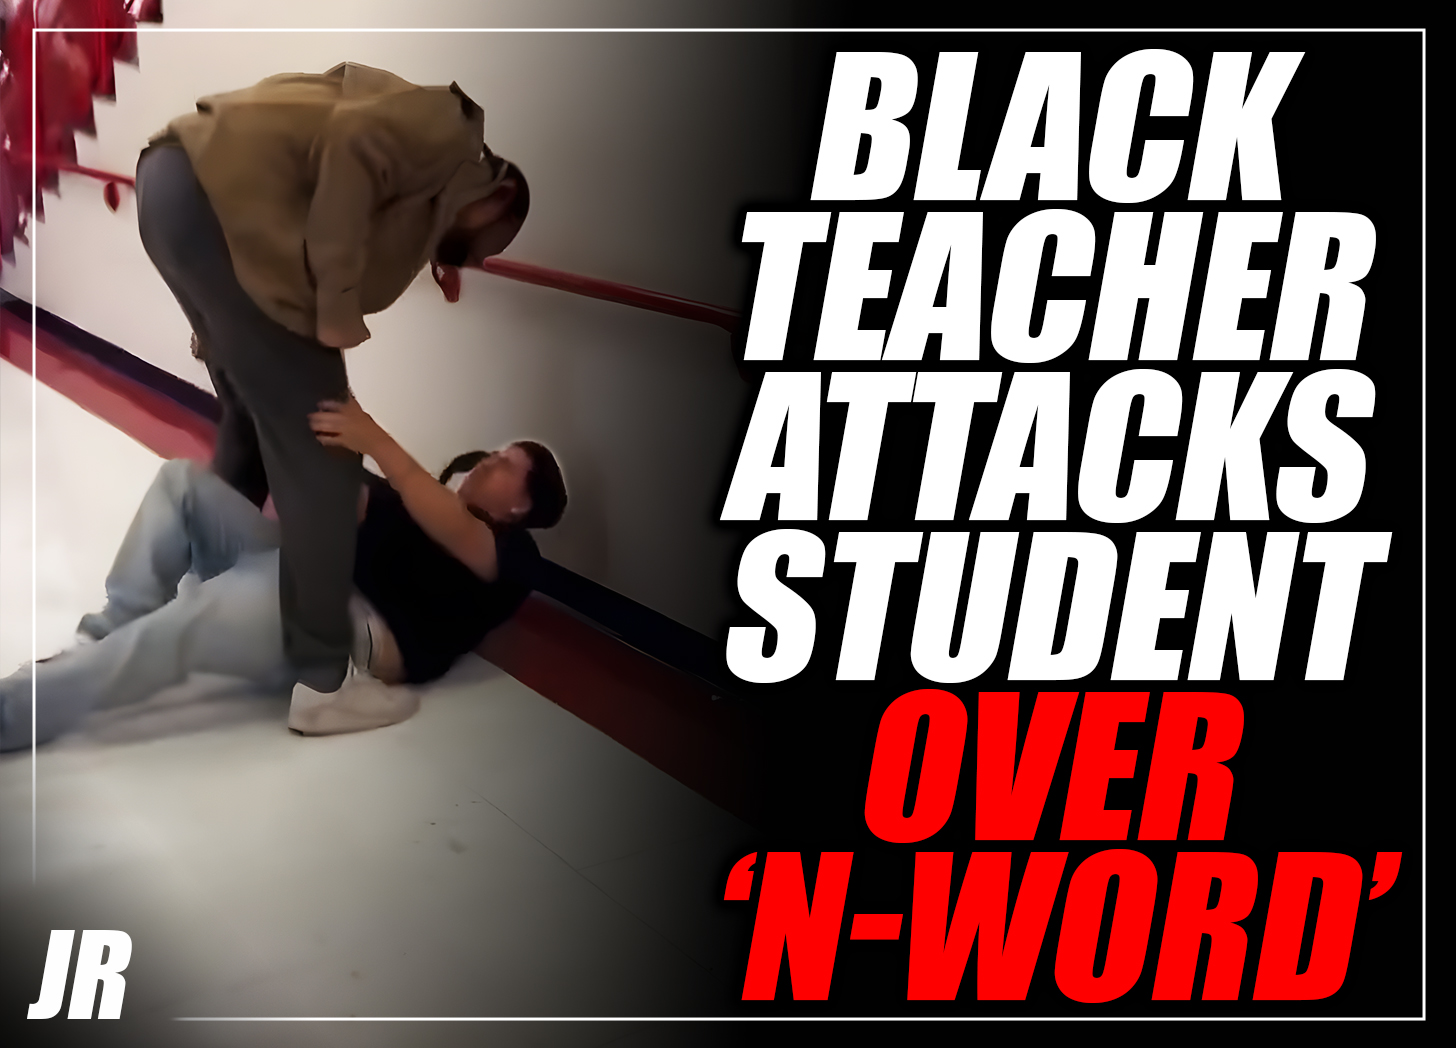 Black teacher brutalizes student over alleged use of ‘racial slur’